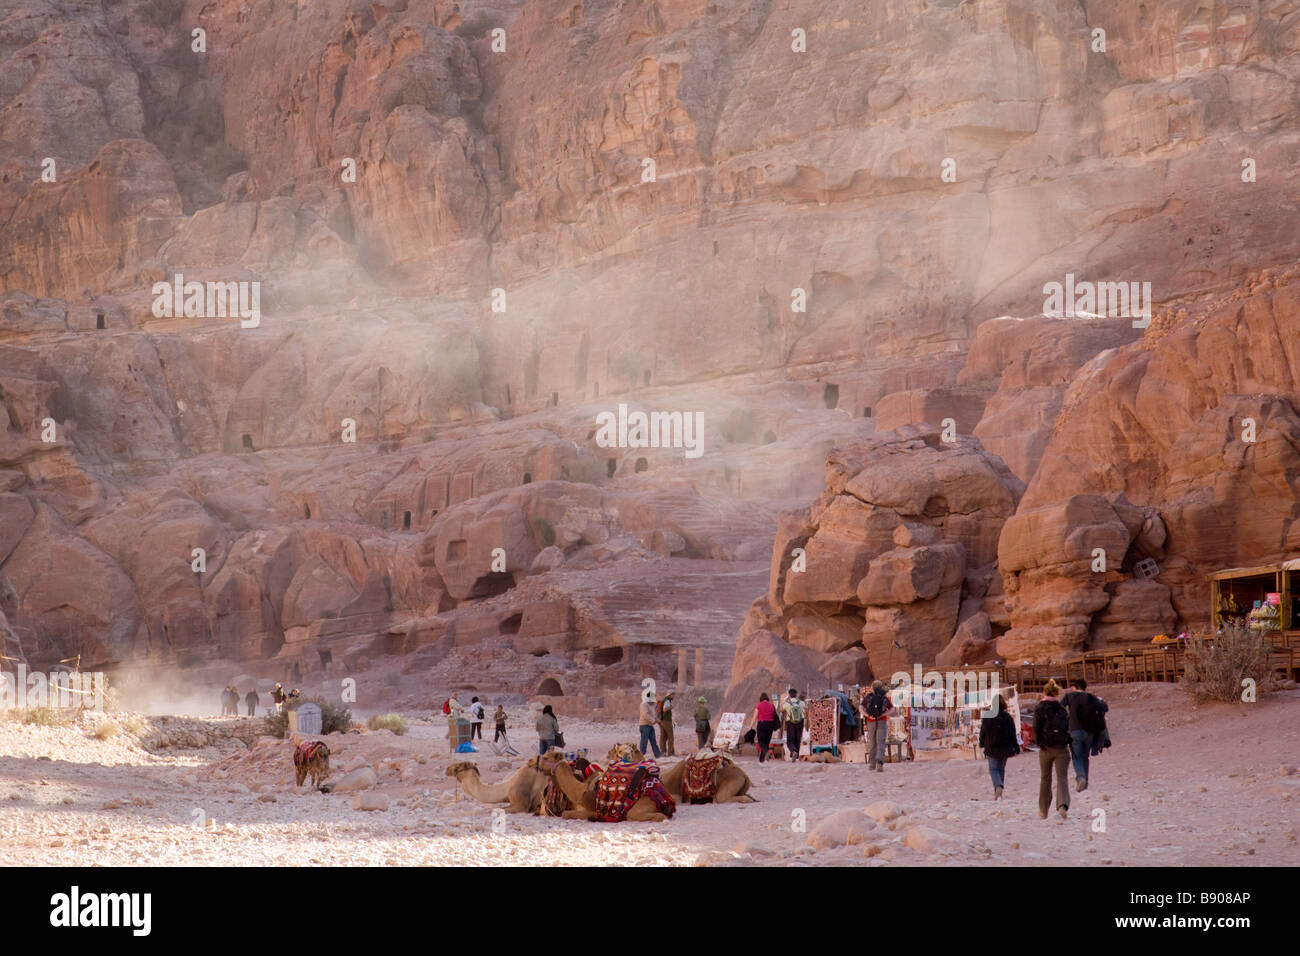 Sand blows through Petra, Jordan Stock Photo